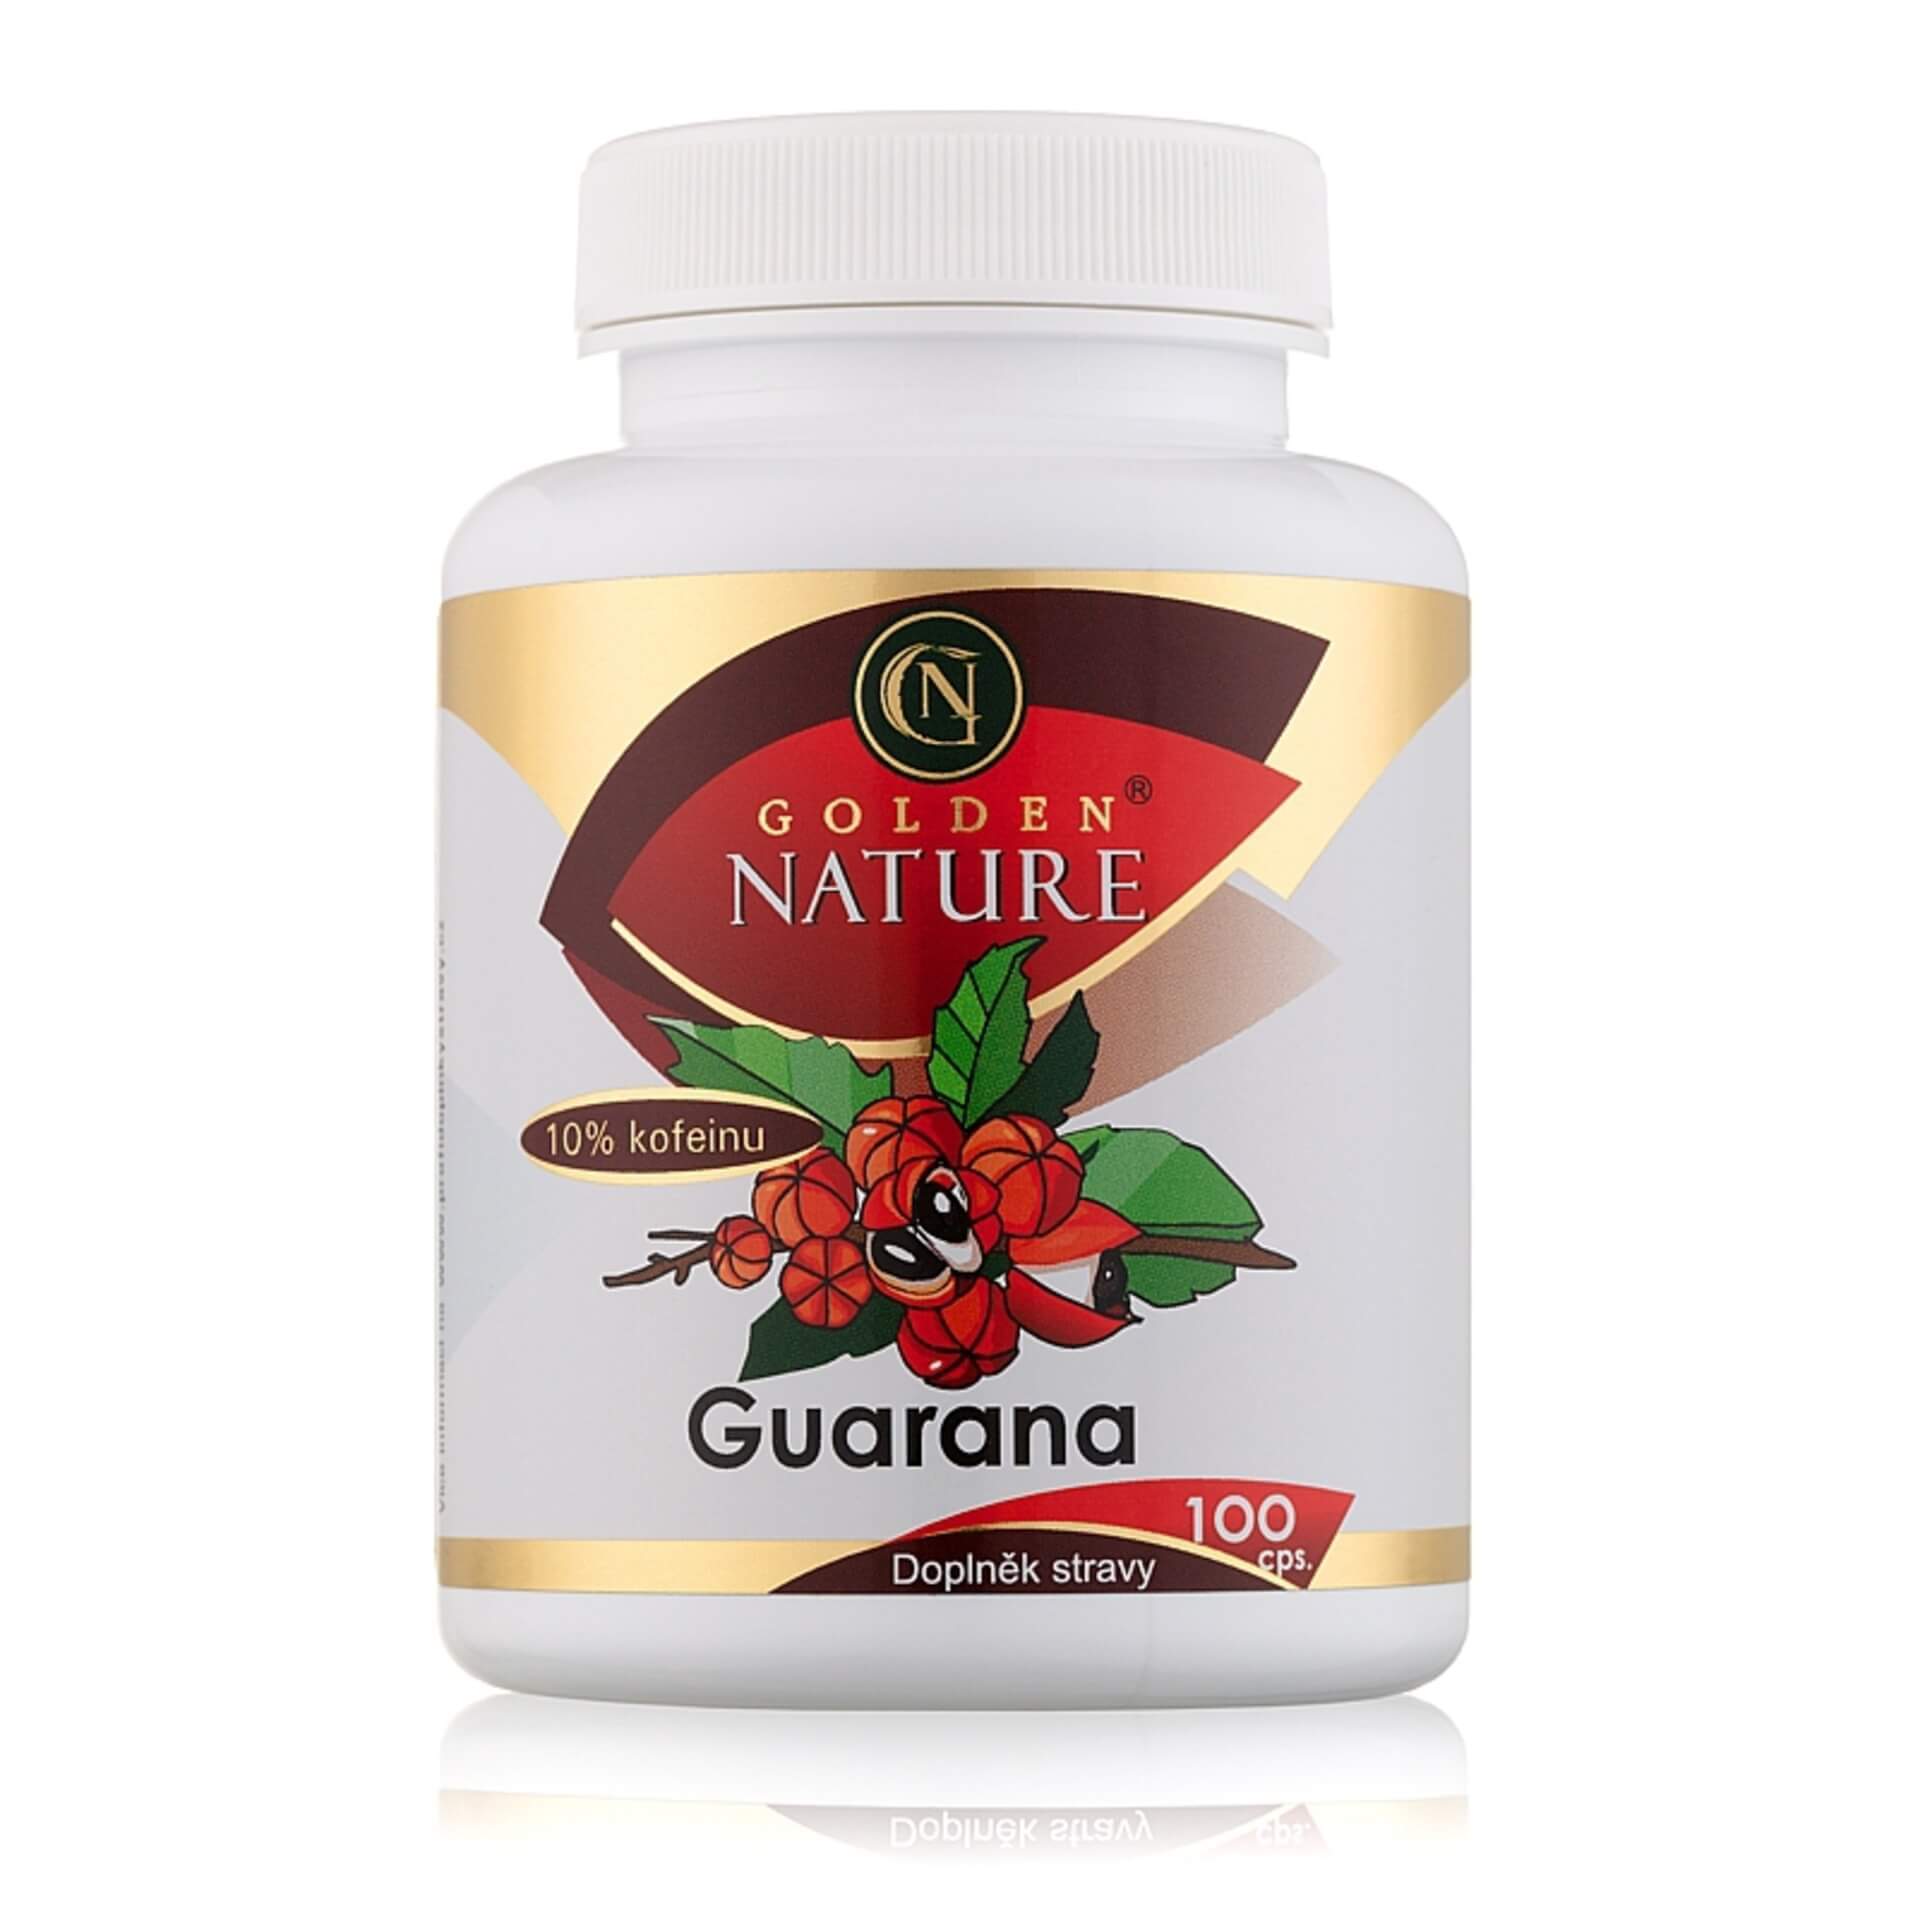 Golden Nature Guarana 10% kofeinu 100 tablet  expirace